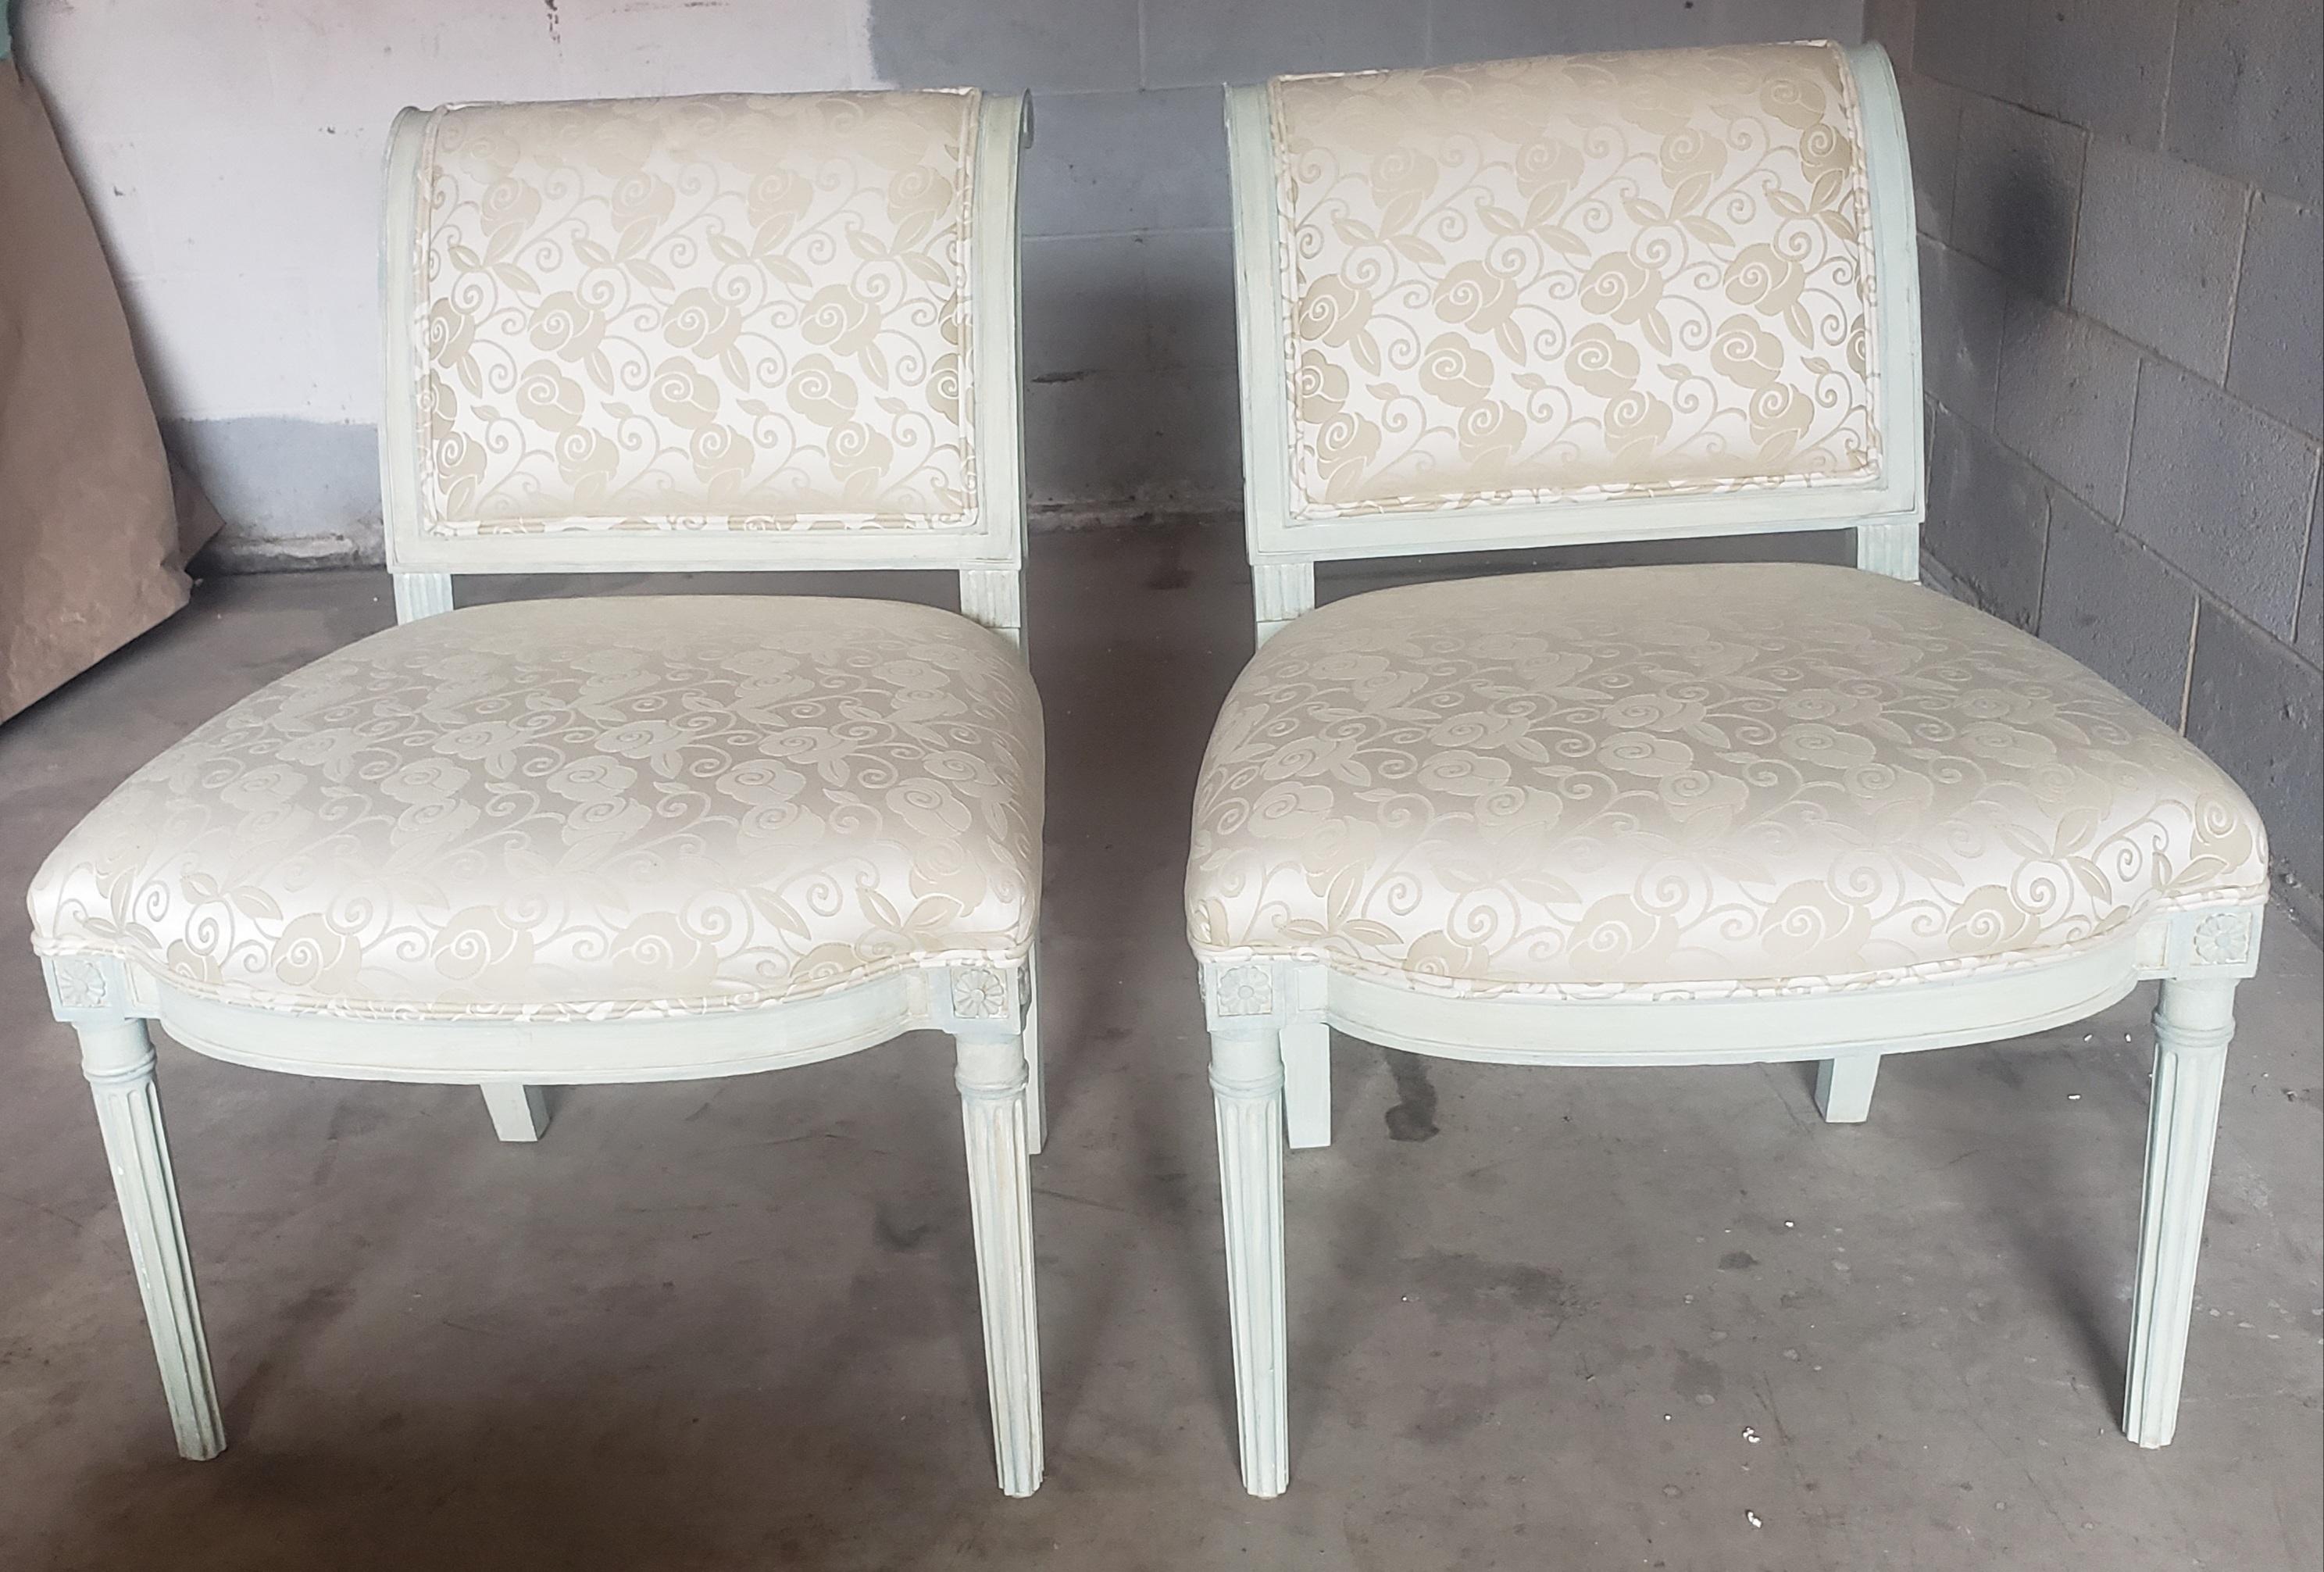 Ein exquisites Paar Französisch Land Mahagoni und gepolstert Slipper Lounge Stühle in ausgezeichnetem Vintage-Zustand. Neuere Hochwertige Polsterung in ausgezeichnetem Zustand.